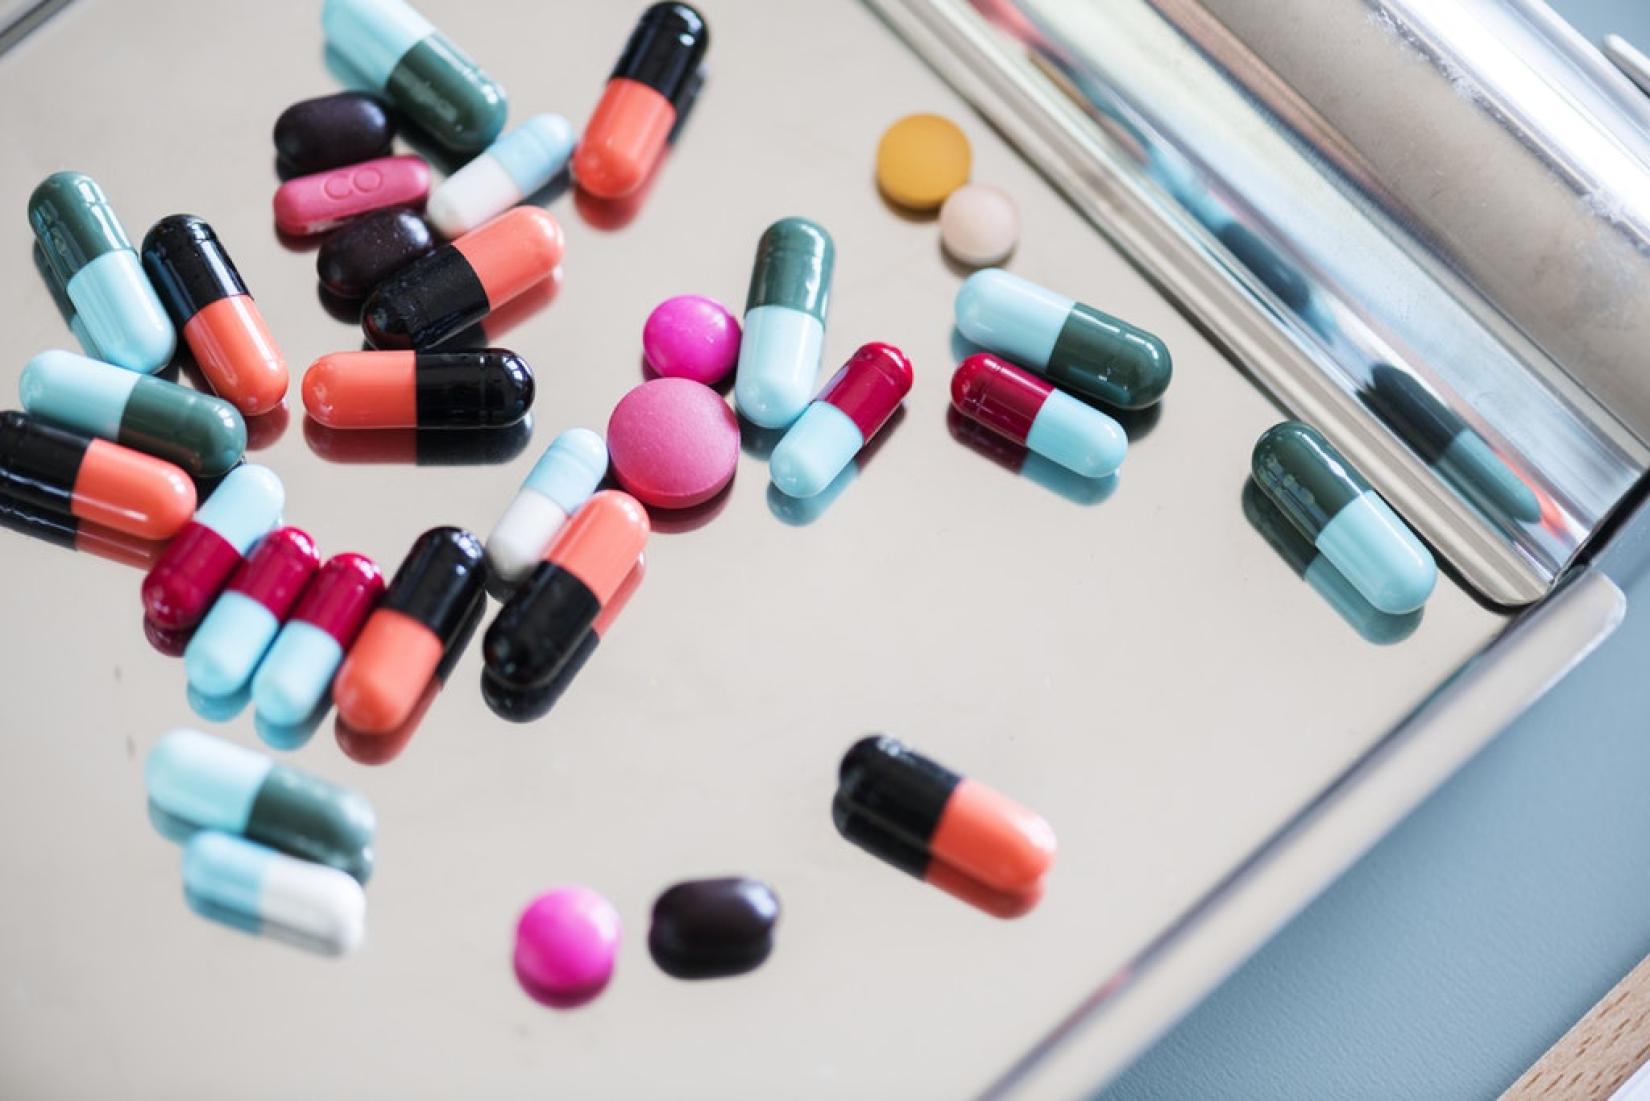 Consumo excessivo e inadequado de antibióticos aumenta a resistência de bactérias a esses medicamentos. Foto: PEXELS